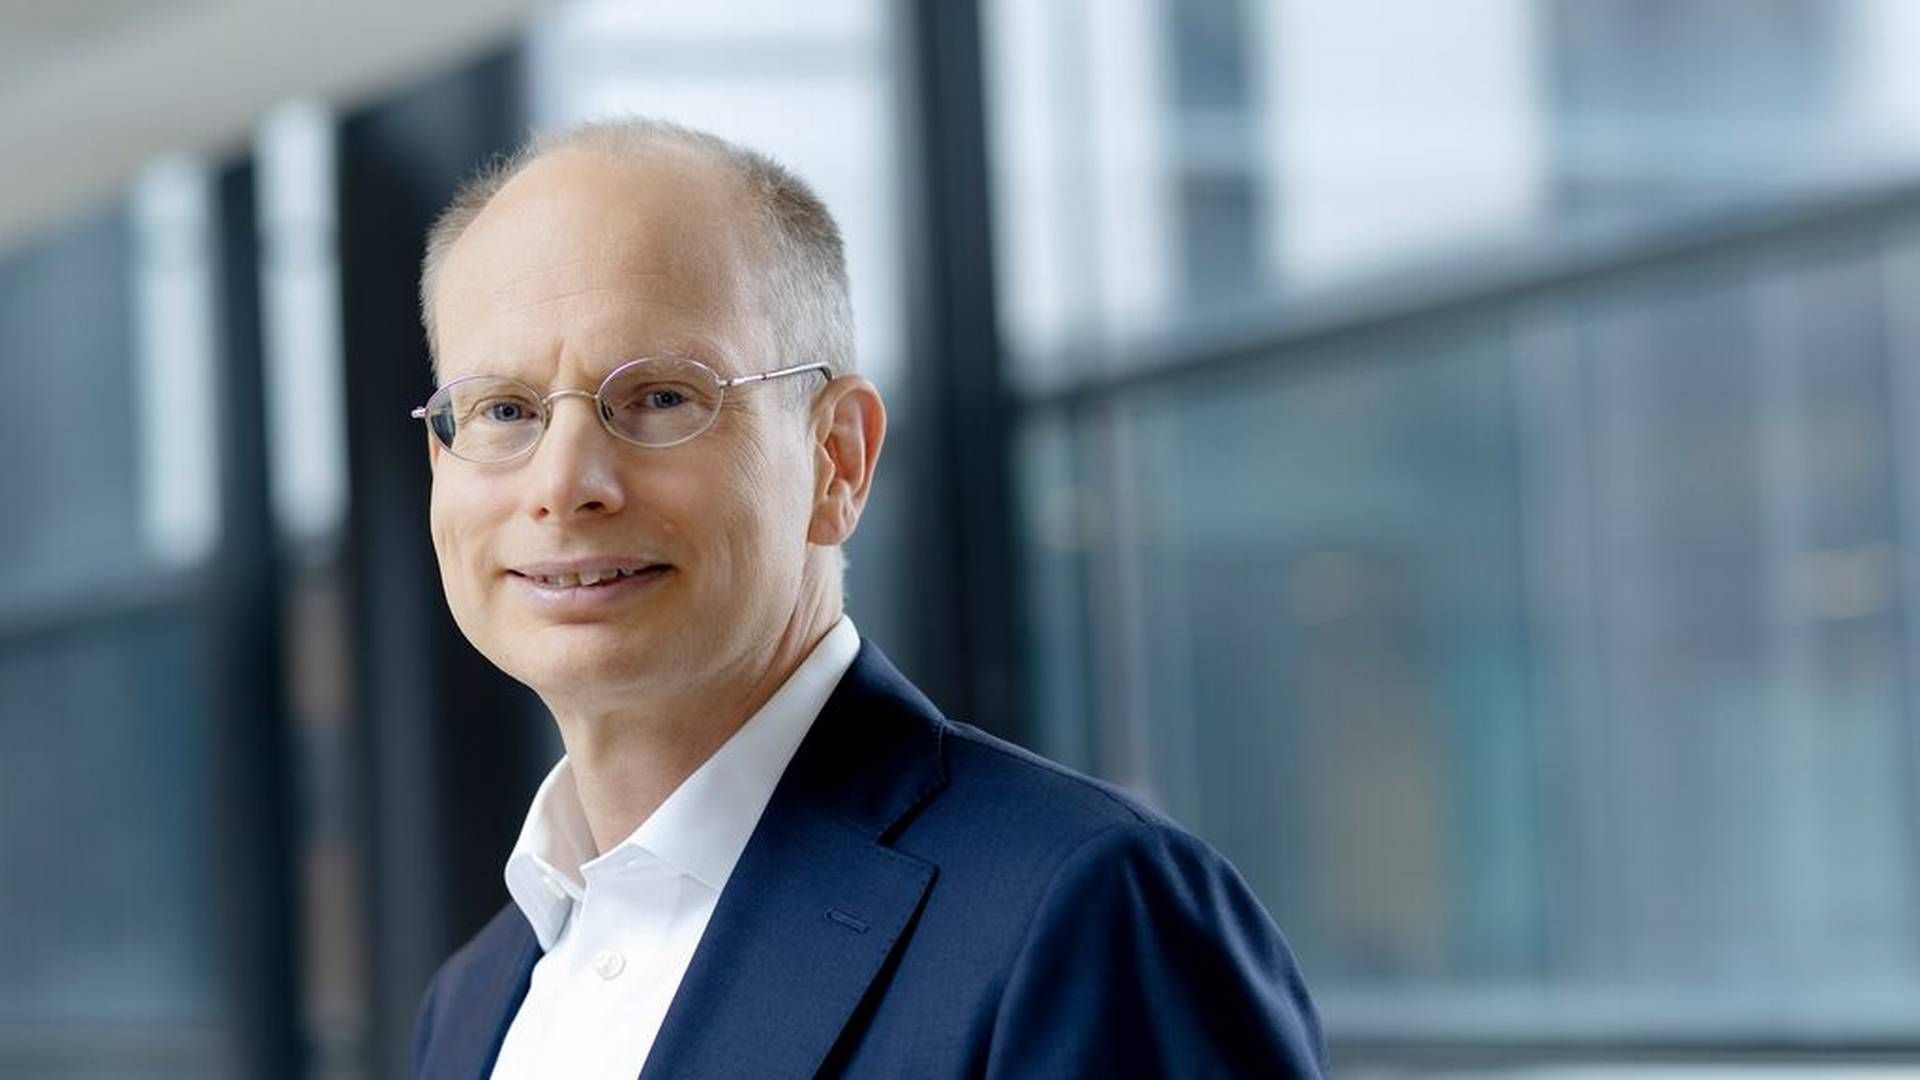 Håkan Agnevall, Wärtsiläs topchef, er optimistisk med hensyn til virksomhedens maritime forretning, fordi antallet af nybygninger fortsat er højt. | Foto: Wärtsilä Corporation